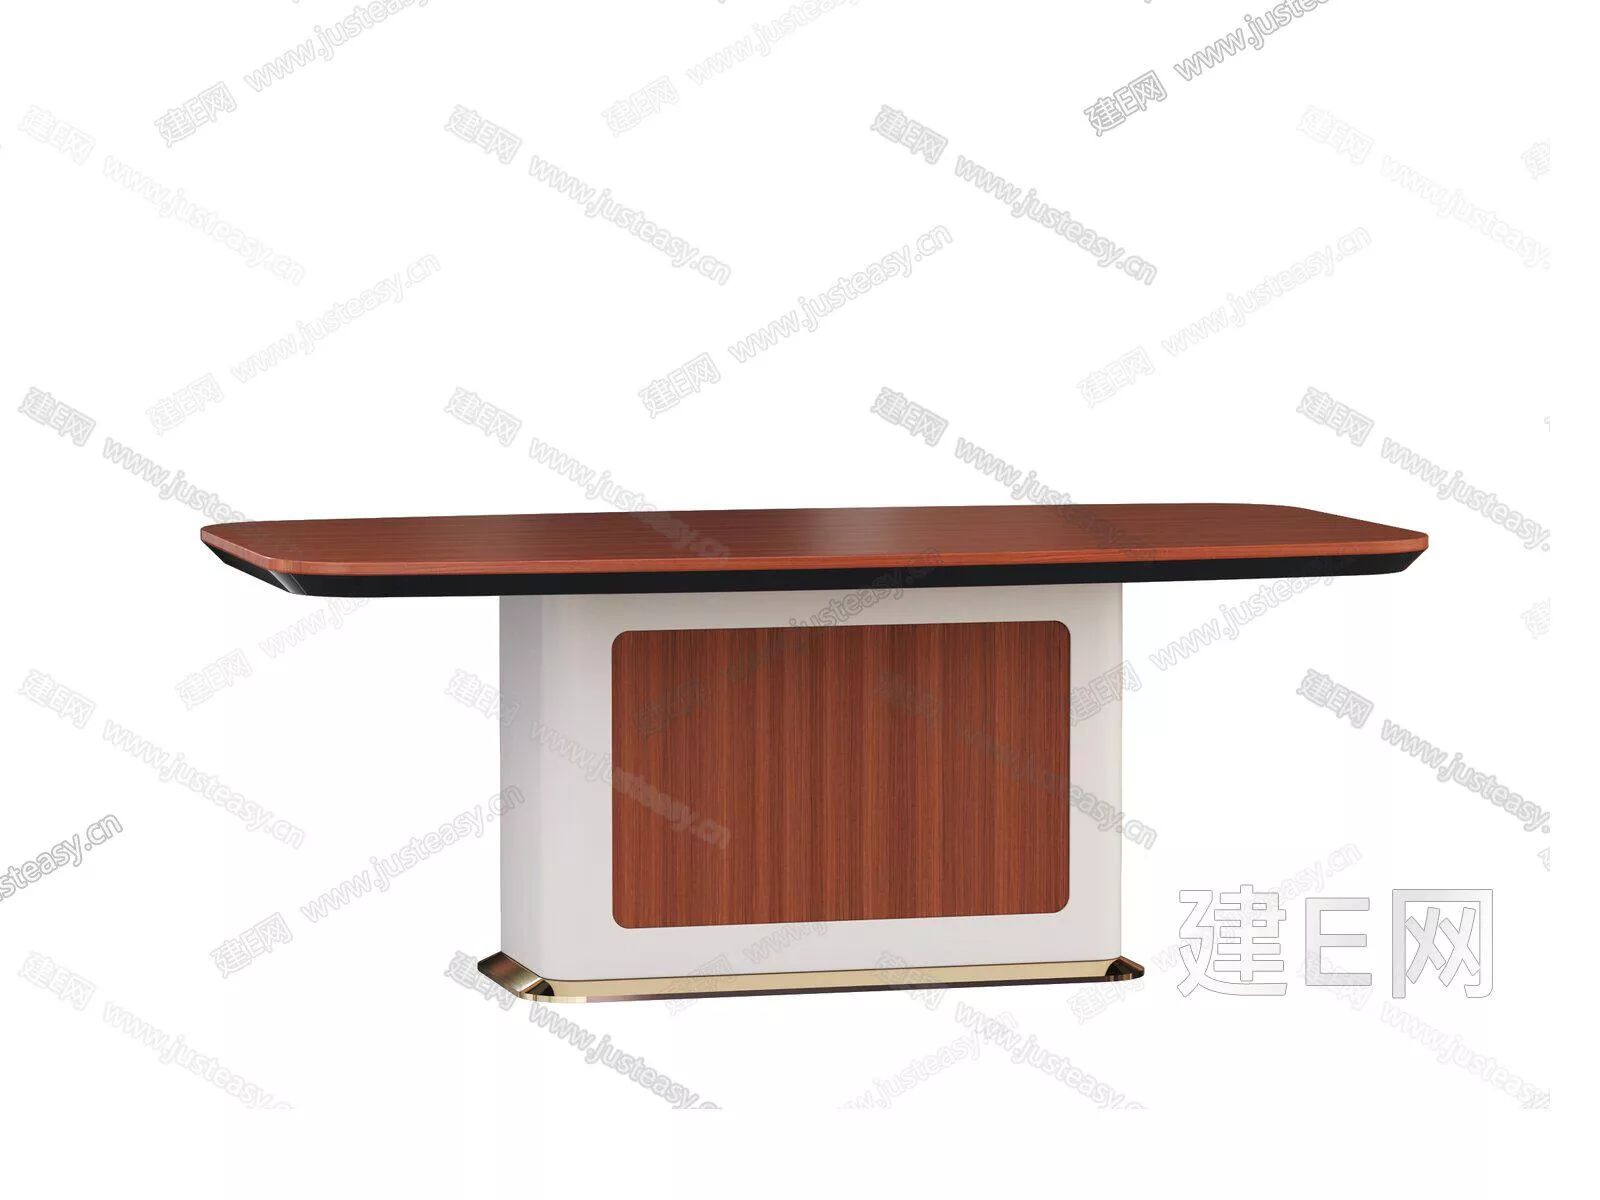 MODERN DINING TABLE SET - SKETCHUP 3D MODEL - ENSCAPE - 104941727